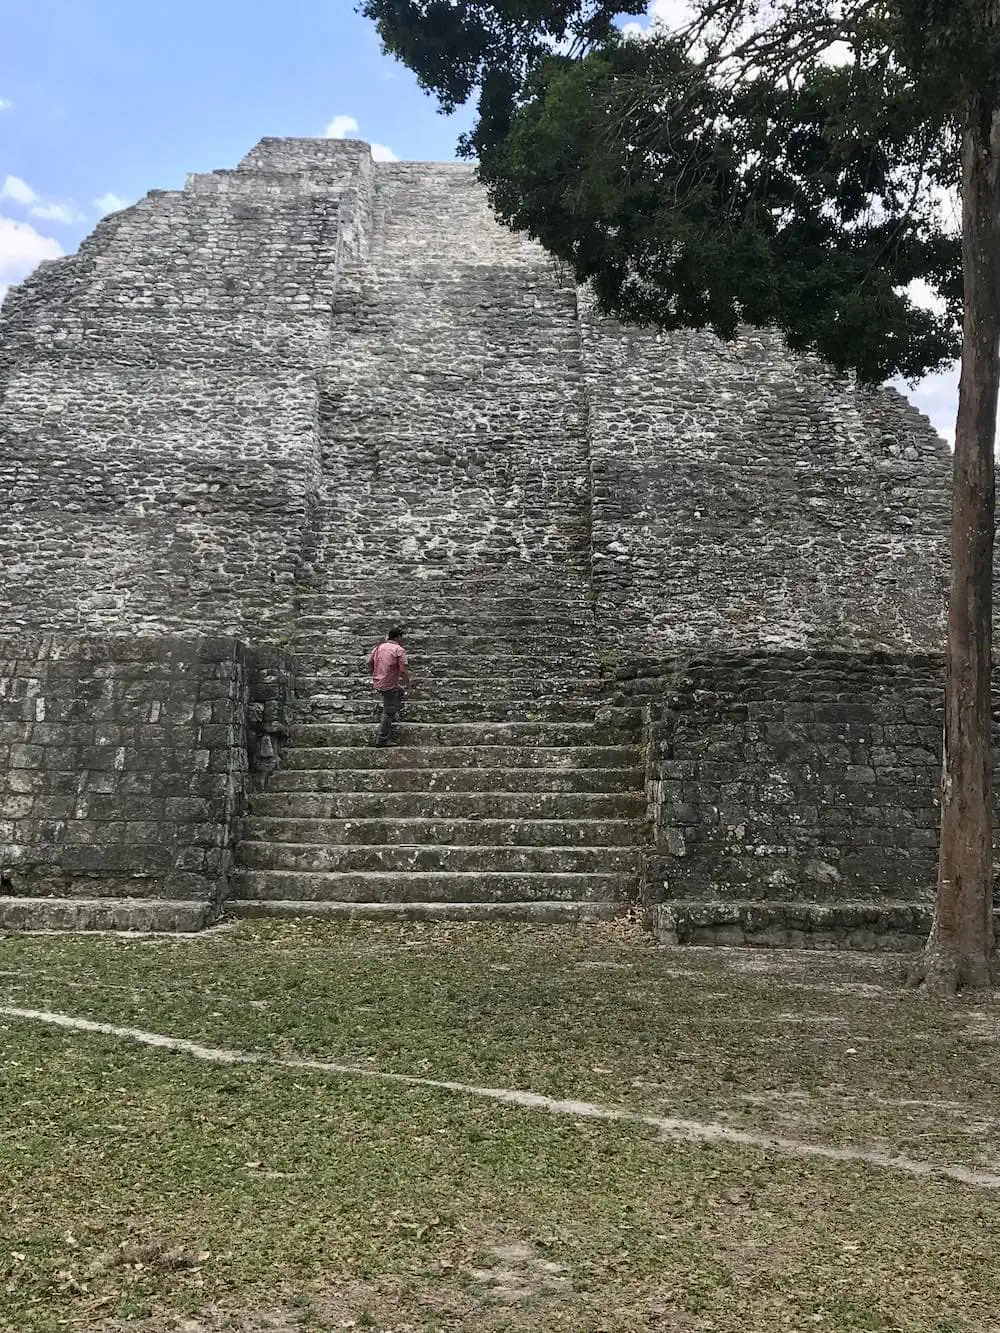 A man climbing a pyramid at Yaxha, Guatemala.